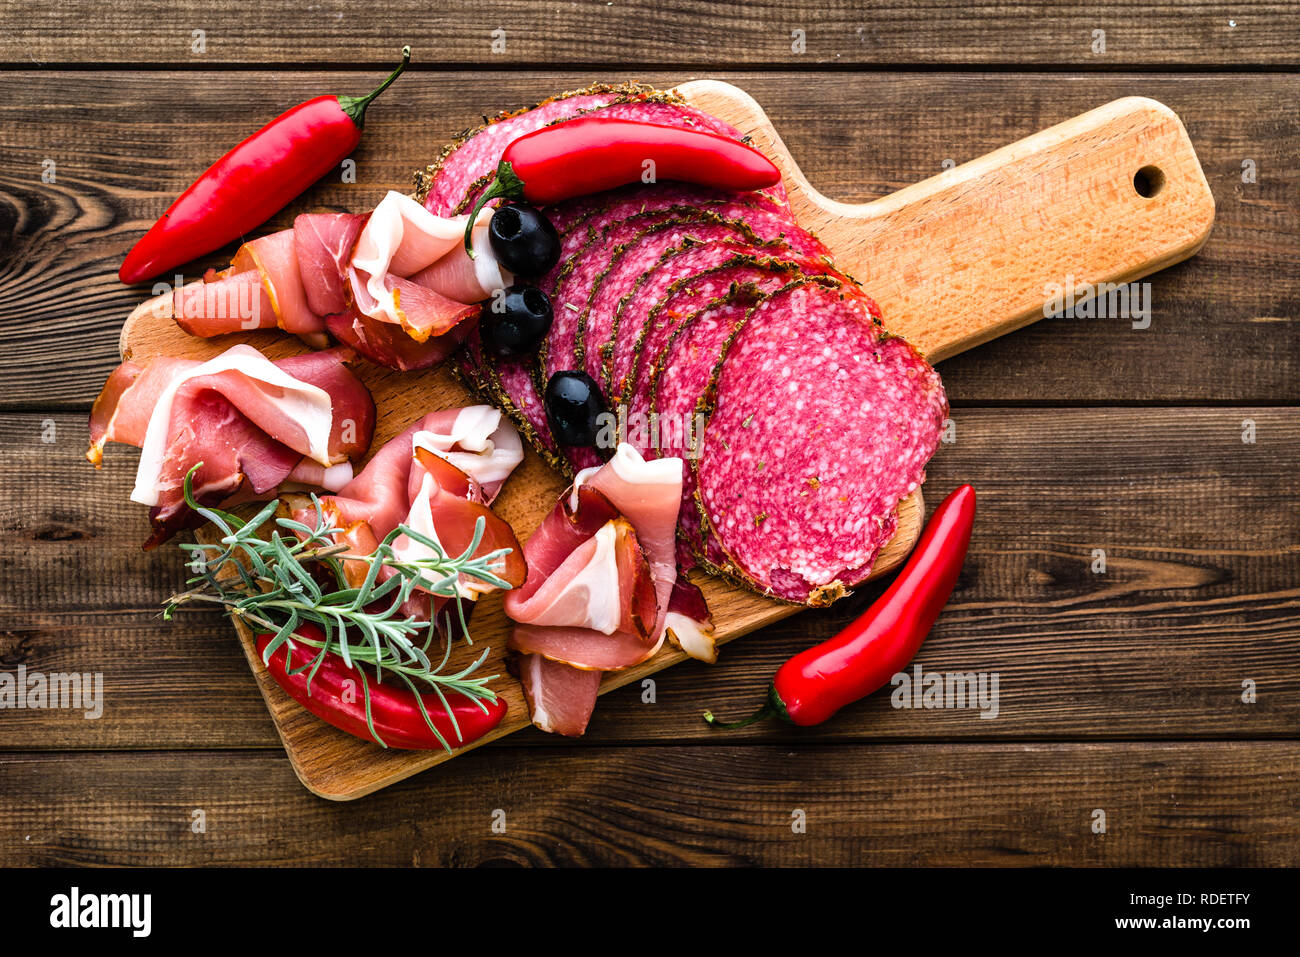 Carne fredda piatto con salame, fette di prosciutto, antipasti italiani sulla tavola di legno Foto Stock